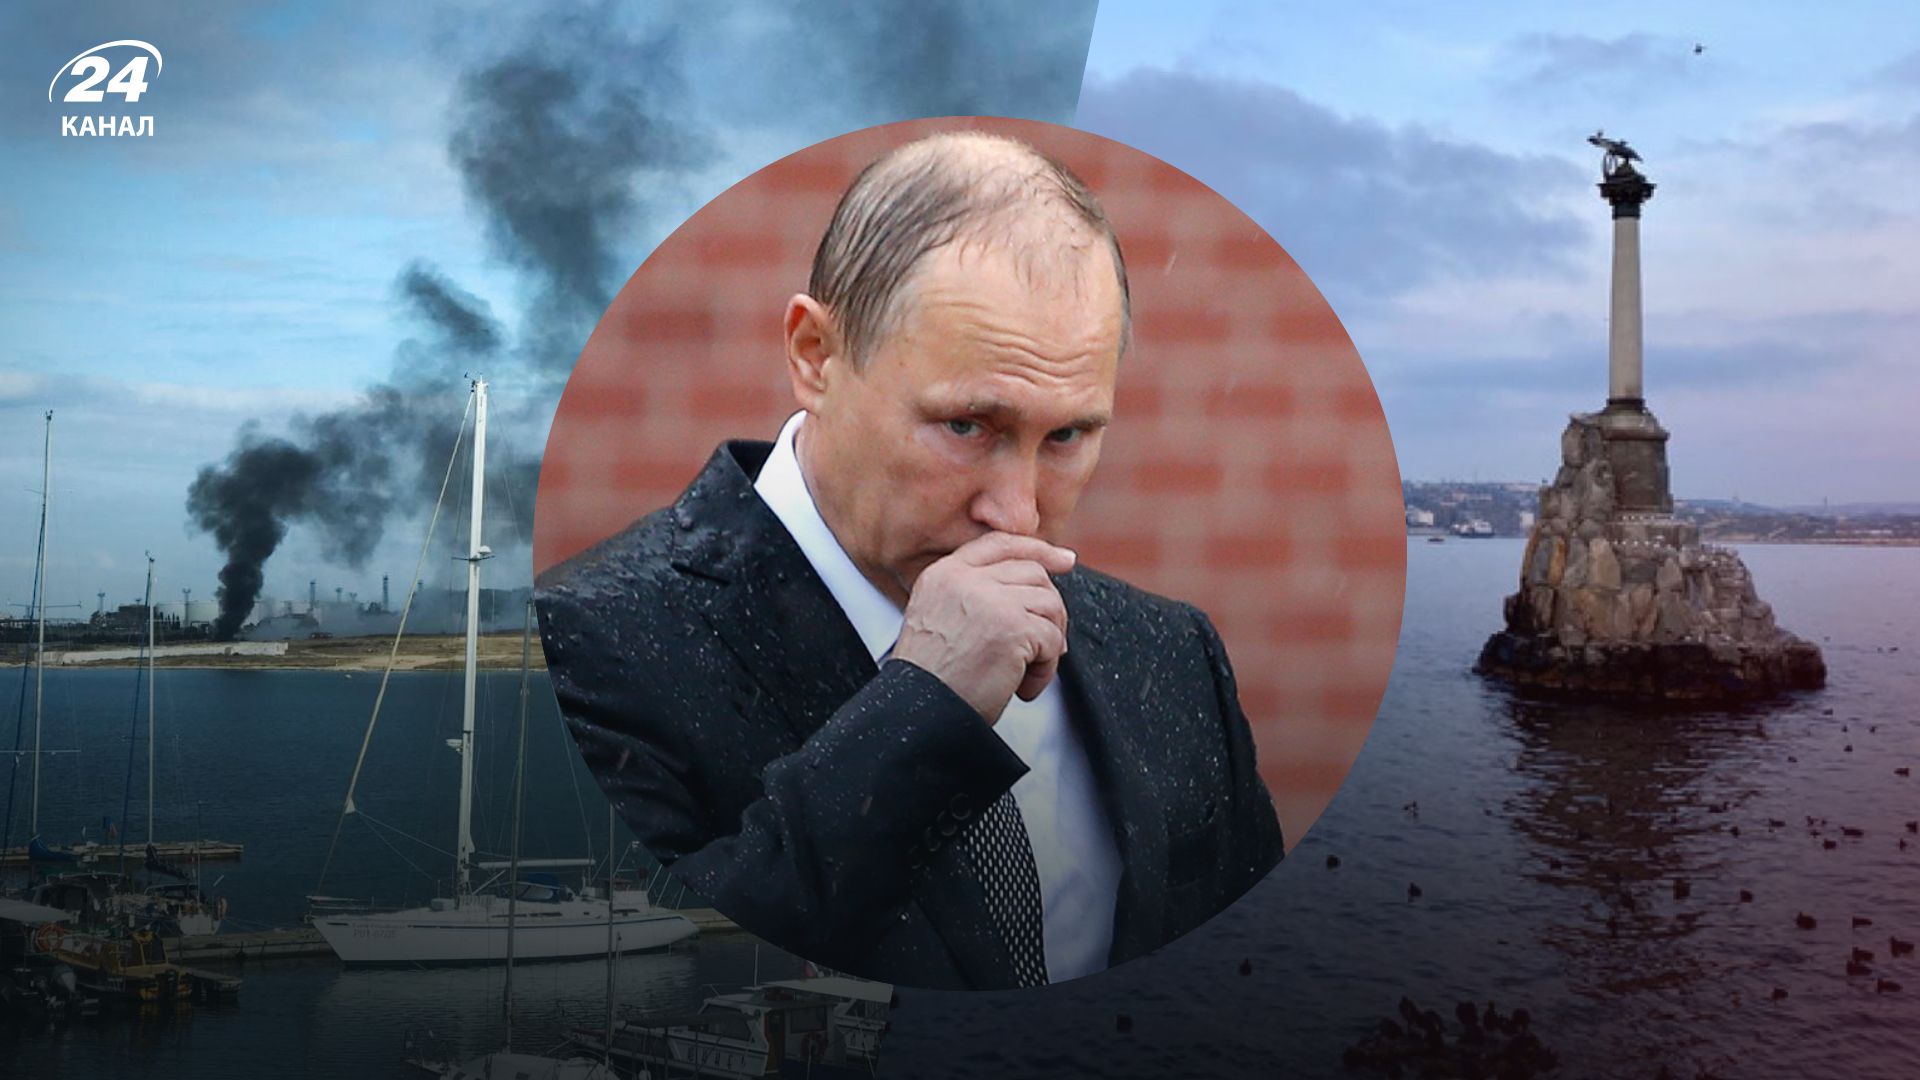 Взрывы в Севастополе 29.10.2022 - кого Россия обвиняет и каковы последствия